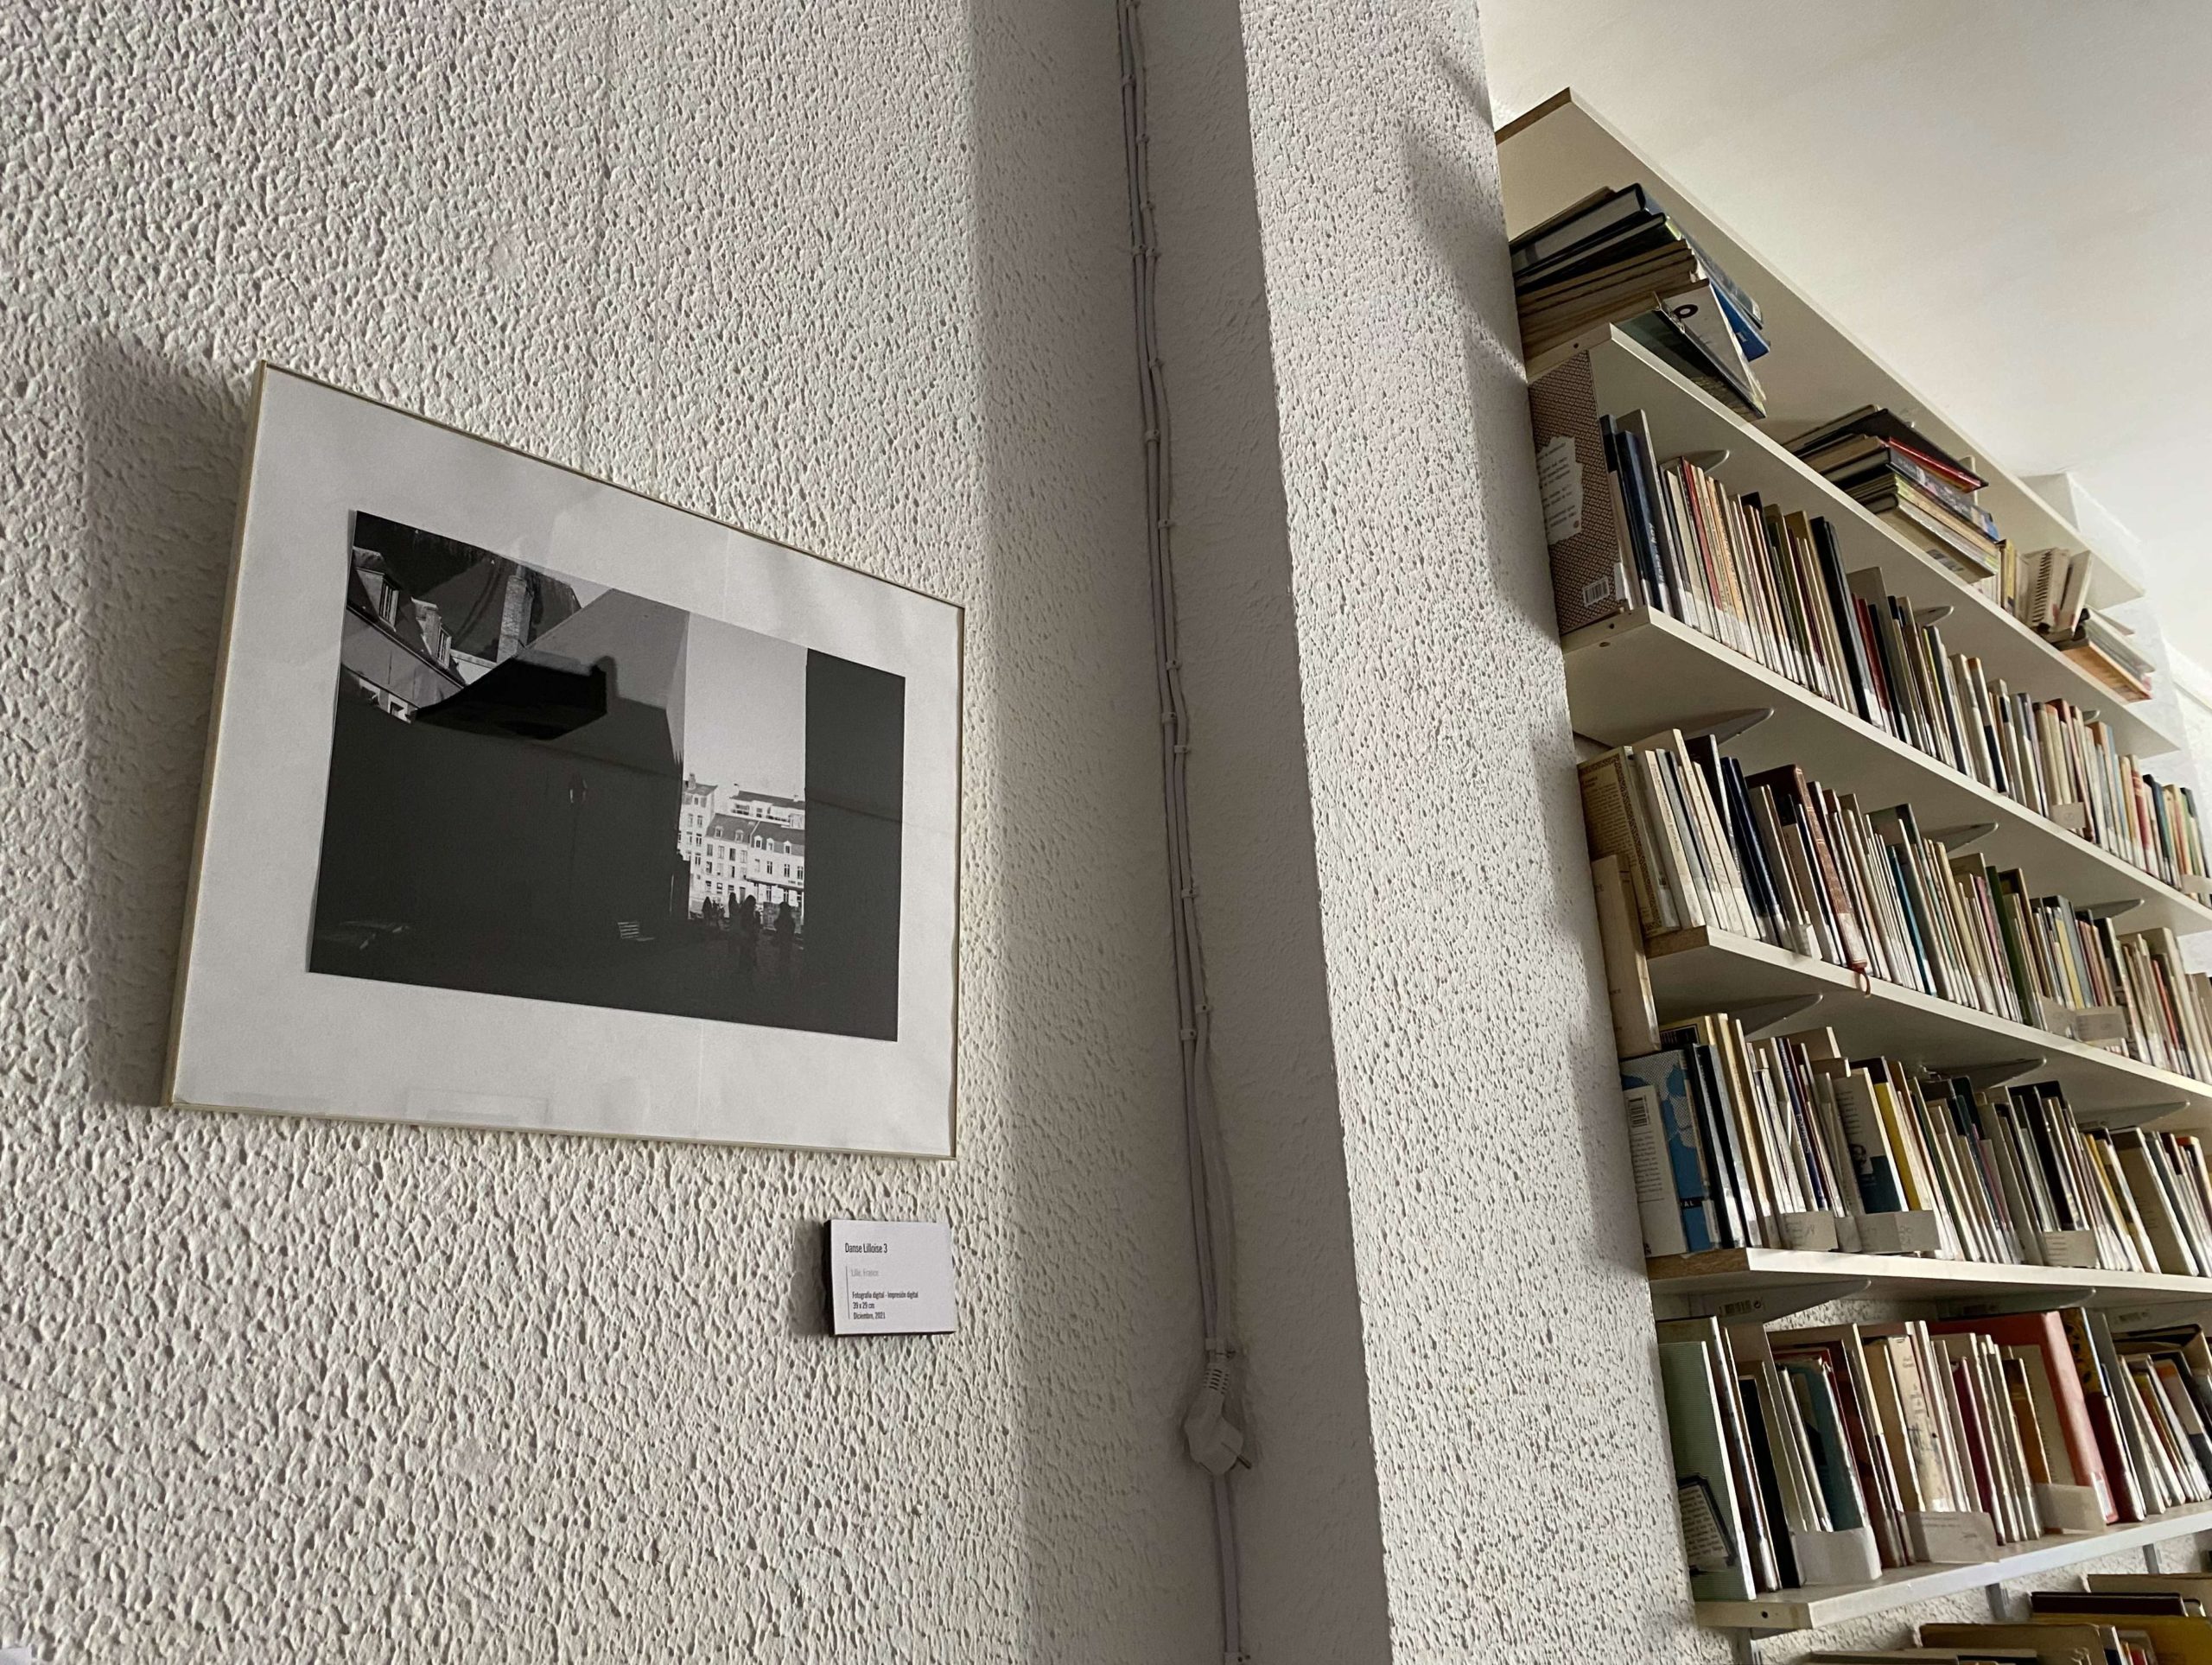 Une des photographies de Franco Viini exposée à côté de la Bibliothèque Juan Rulfo. 